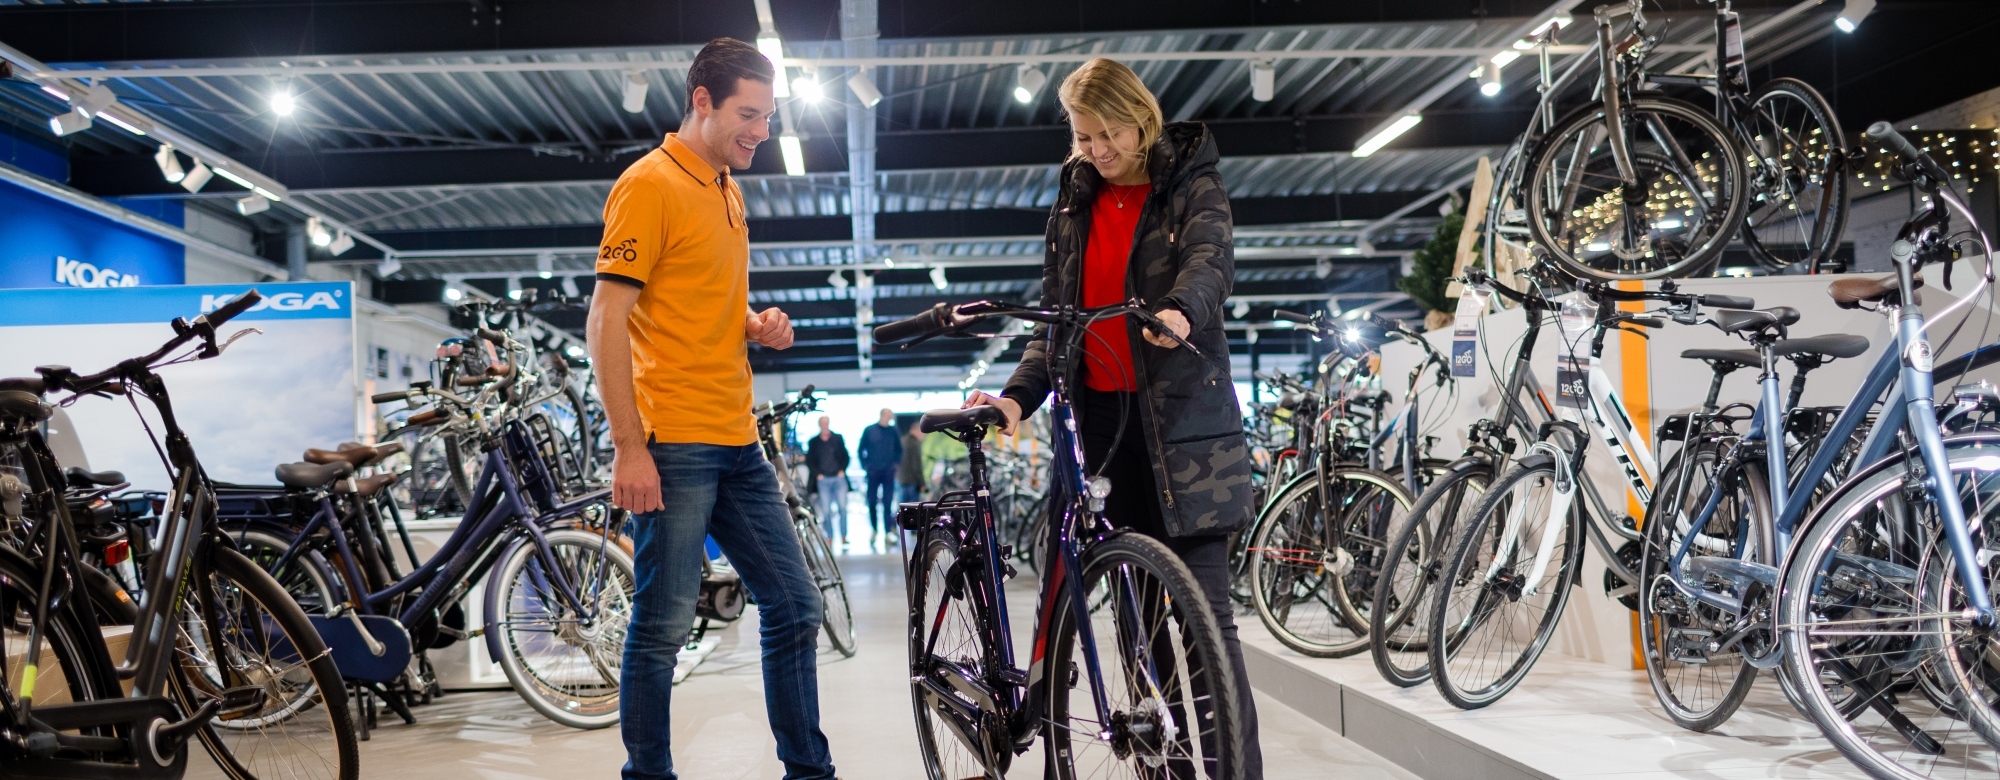 12GO Biking medewerker helpt klant met fiets Fietslease Holland